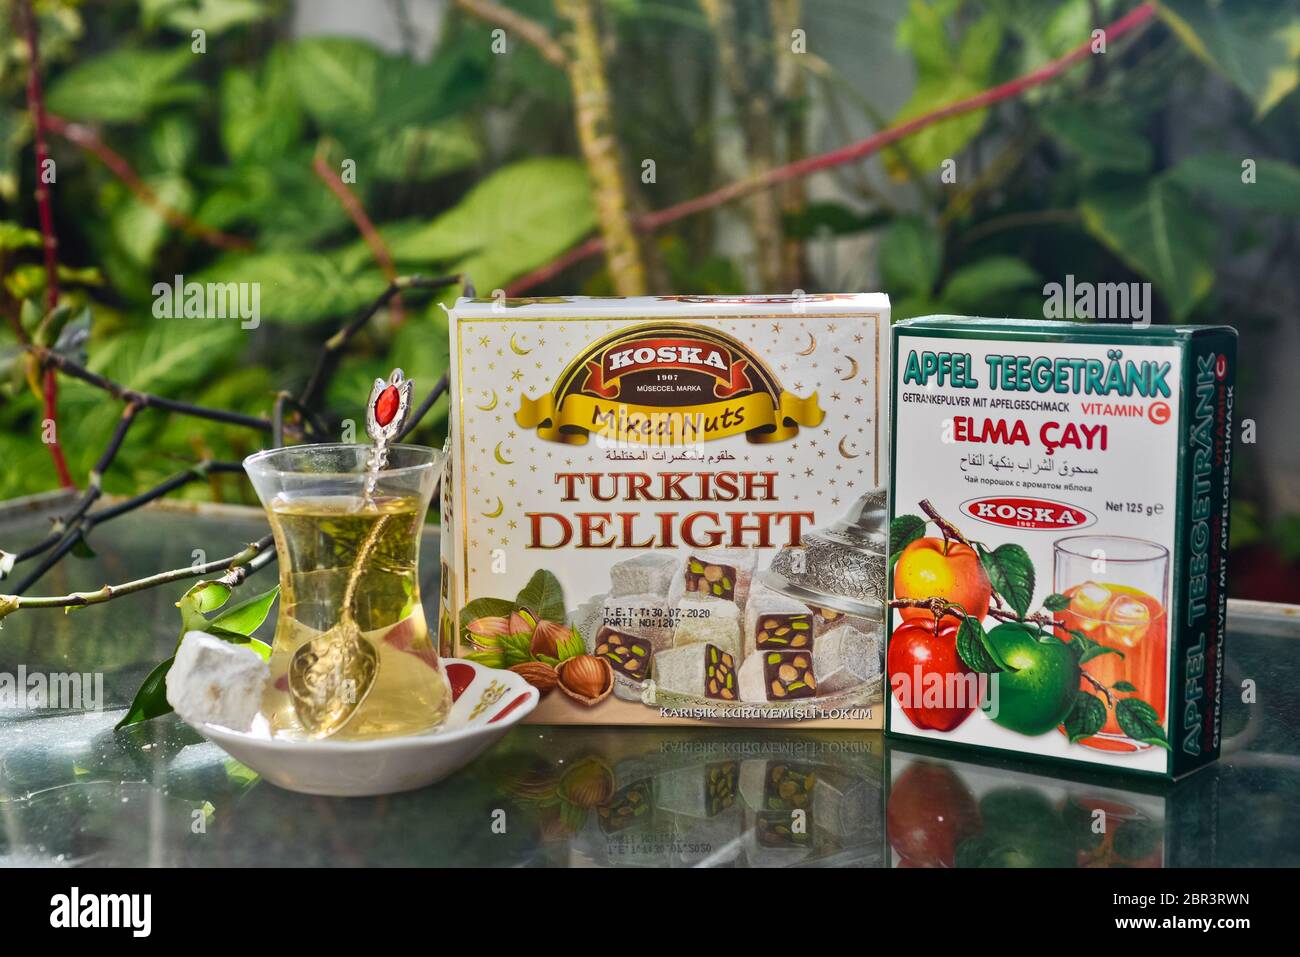 Thé turc aux pommes et bonbons (délices turcs), servis sur une table en verre dans un jardin Banque D'Images